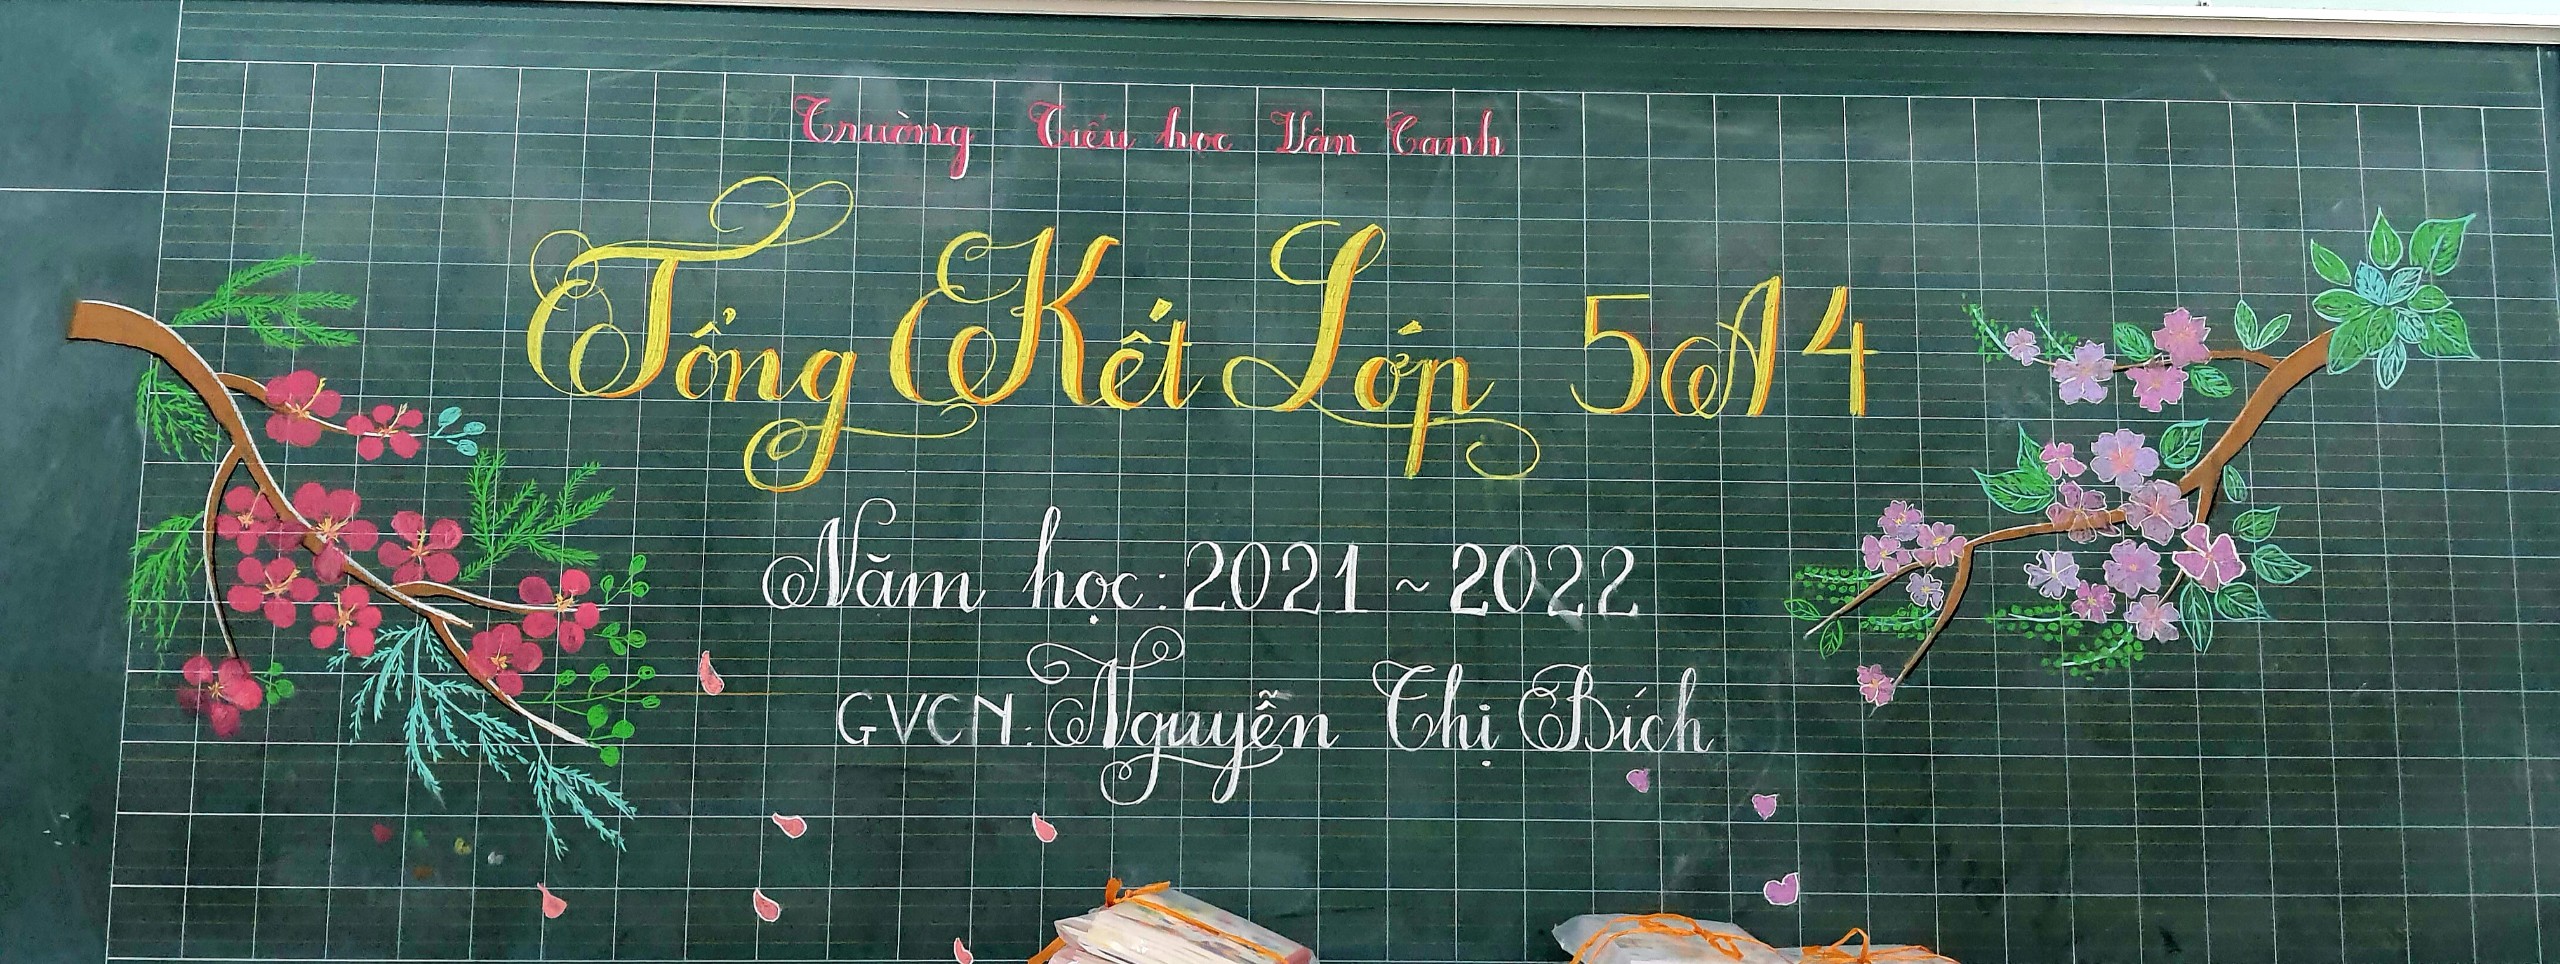 Những chiếc bảng xinh xinh của ngày cuối cùng năm học 2021 - 2022